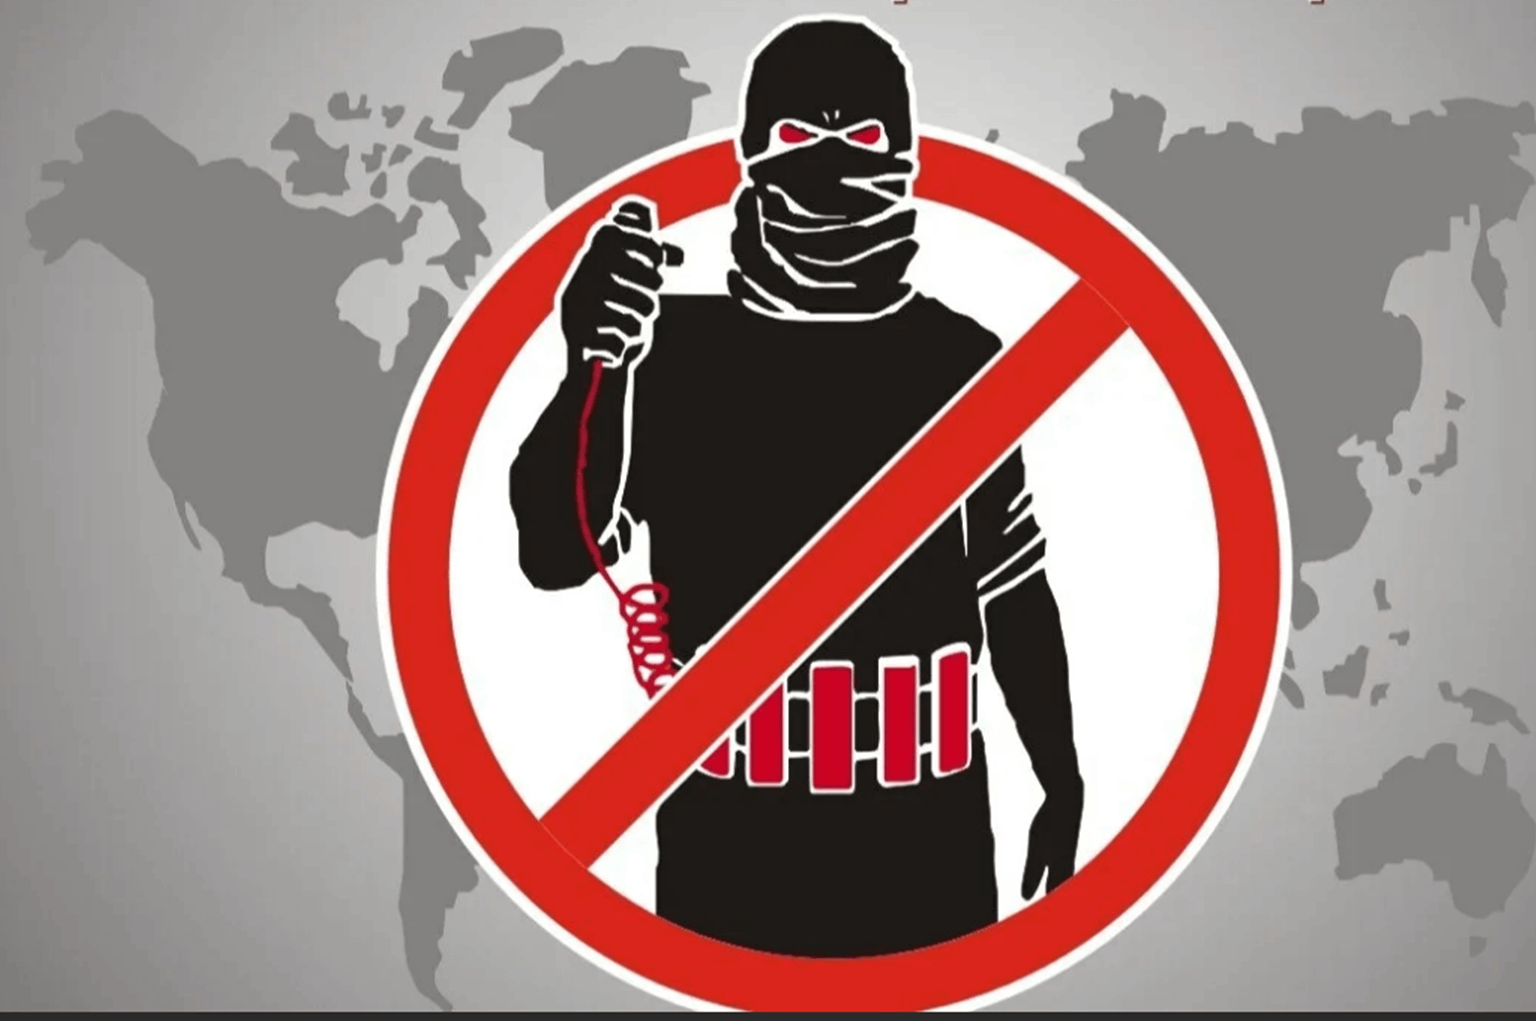 Плакат «терроризм»